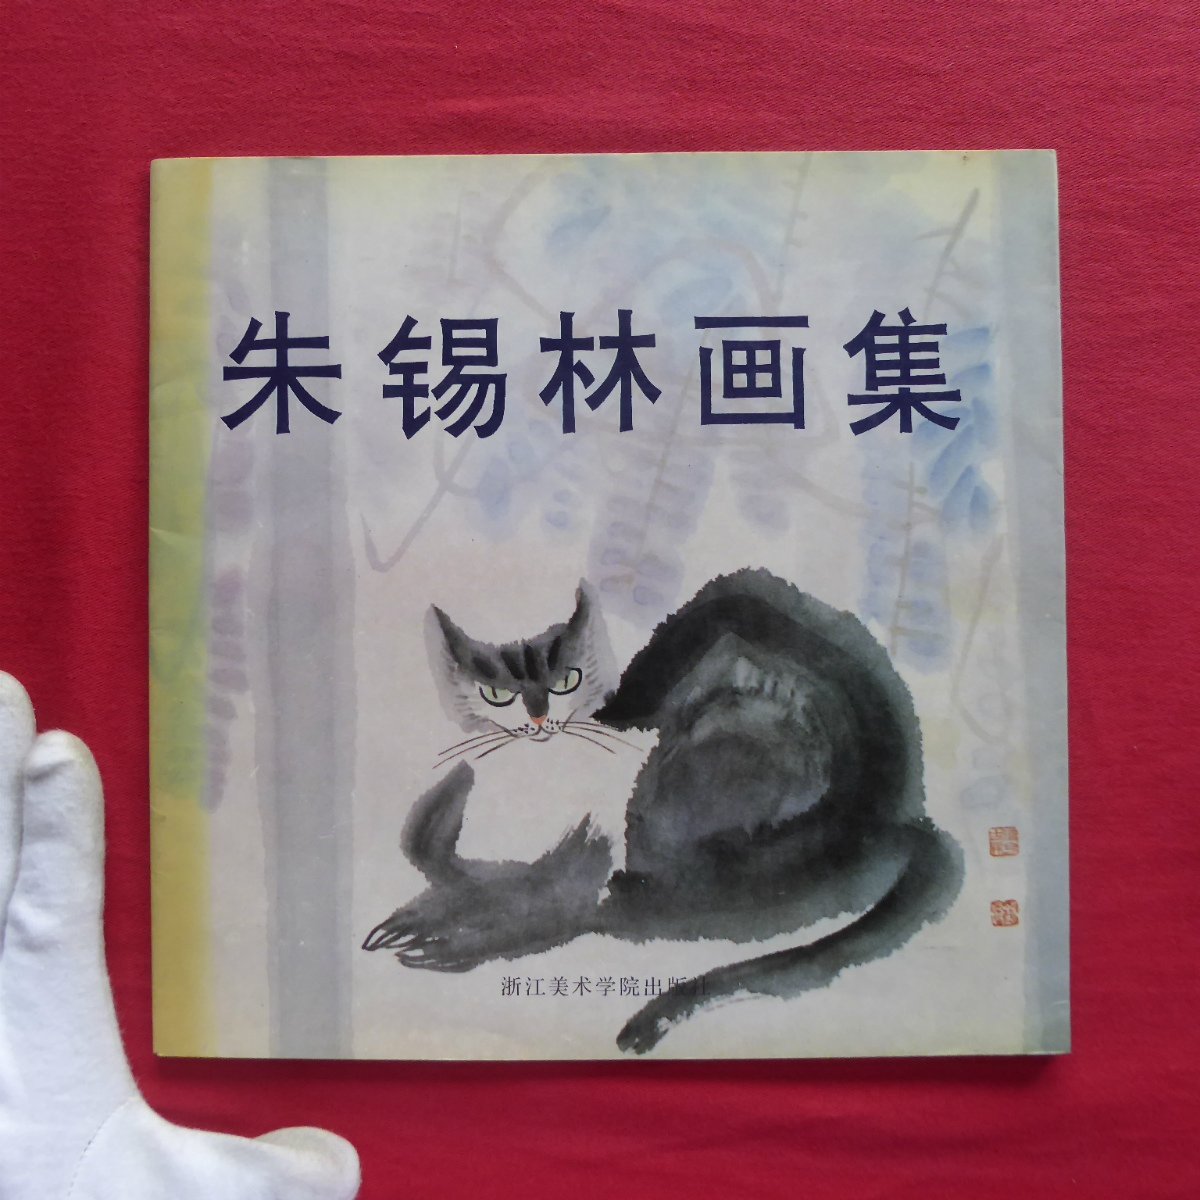 كتالوج w18 [المجموعة الفنية لـ Zhu Xilin/دار نشر أكاديمية تشجيانغ للفنون, 1992], تلوين, كتاب فن, مجموعة, فهرس